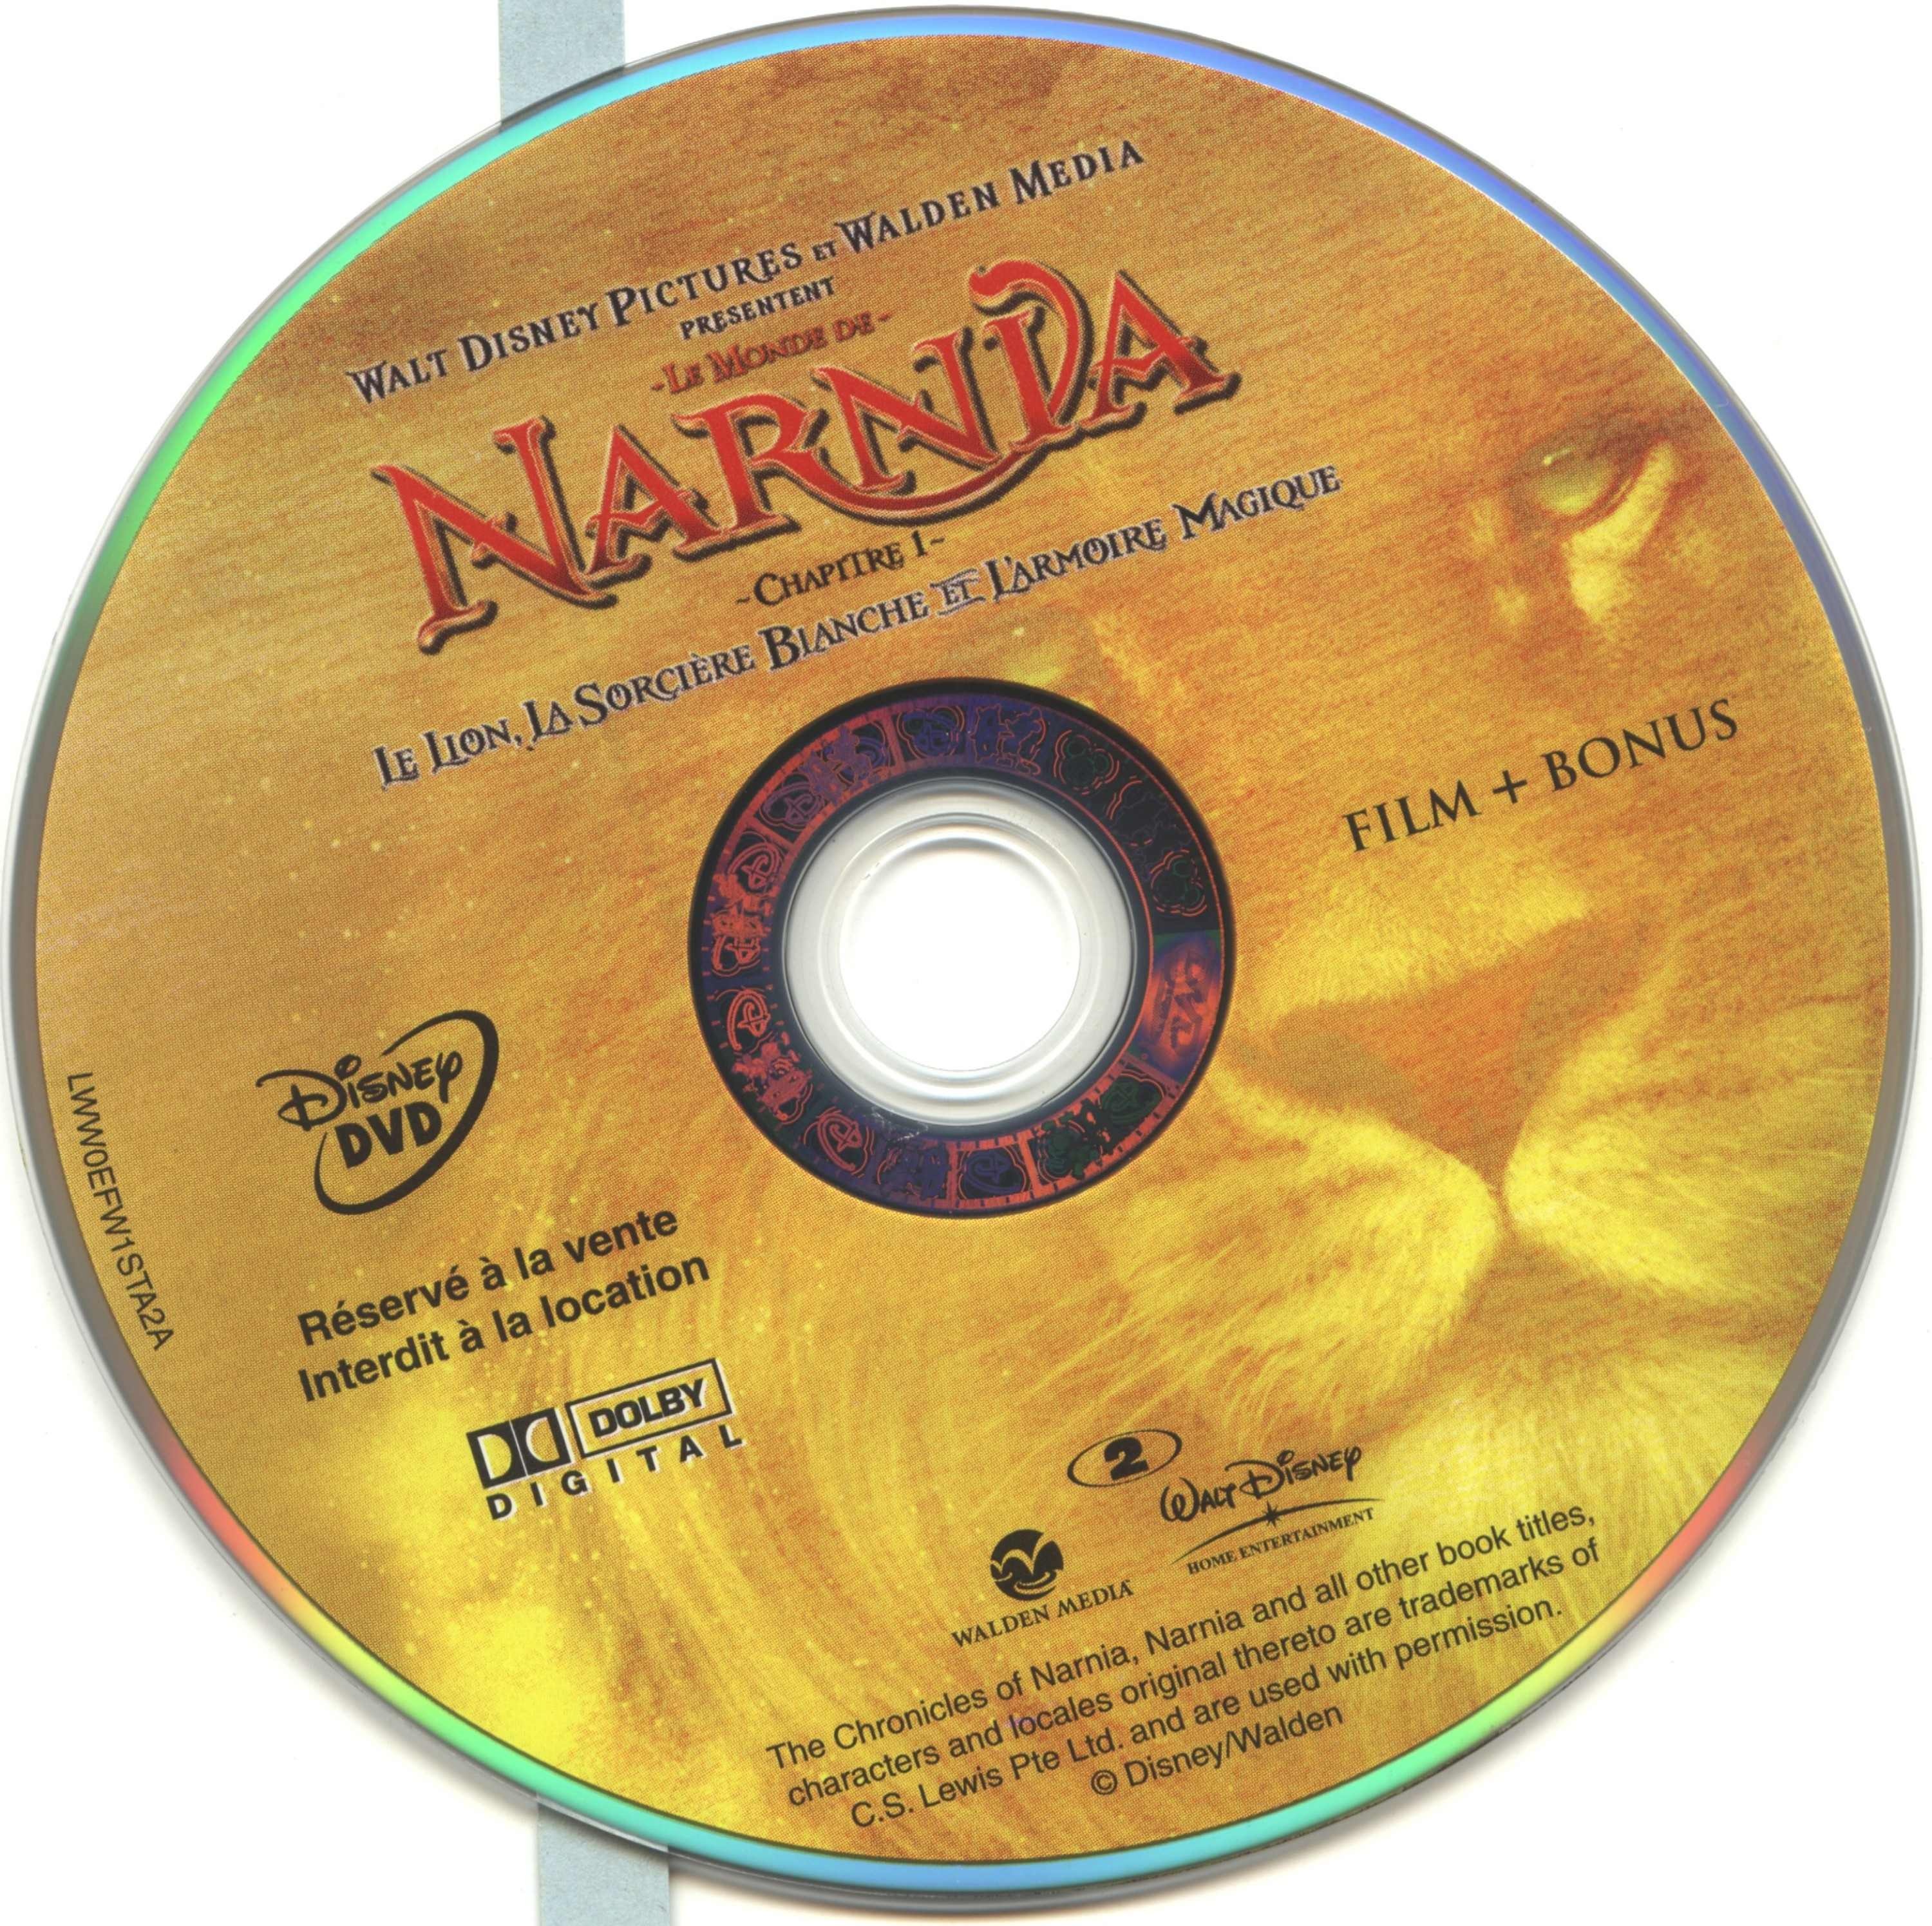 Le monde de narnia chapitre 1 DISC 1